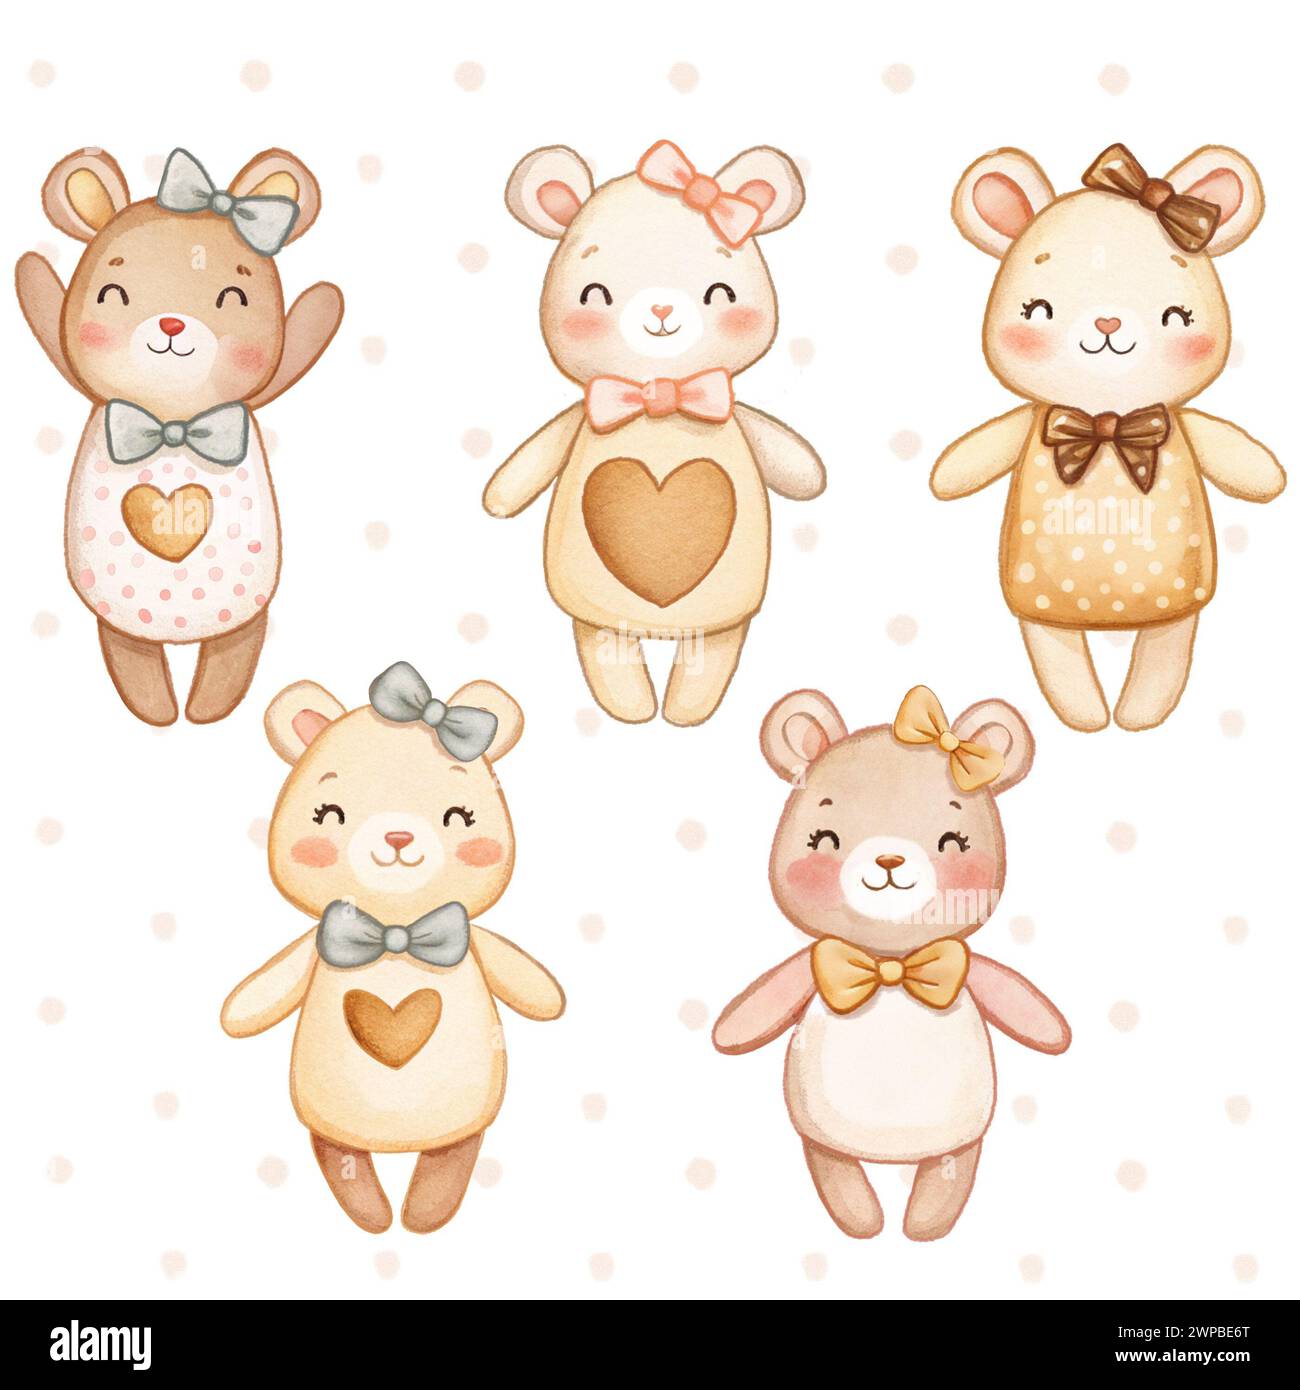 Bears collection isolée enfants illustration dessinée à la main mignonne adorable Banque D'Images